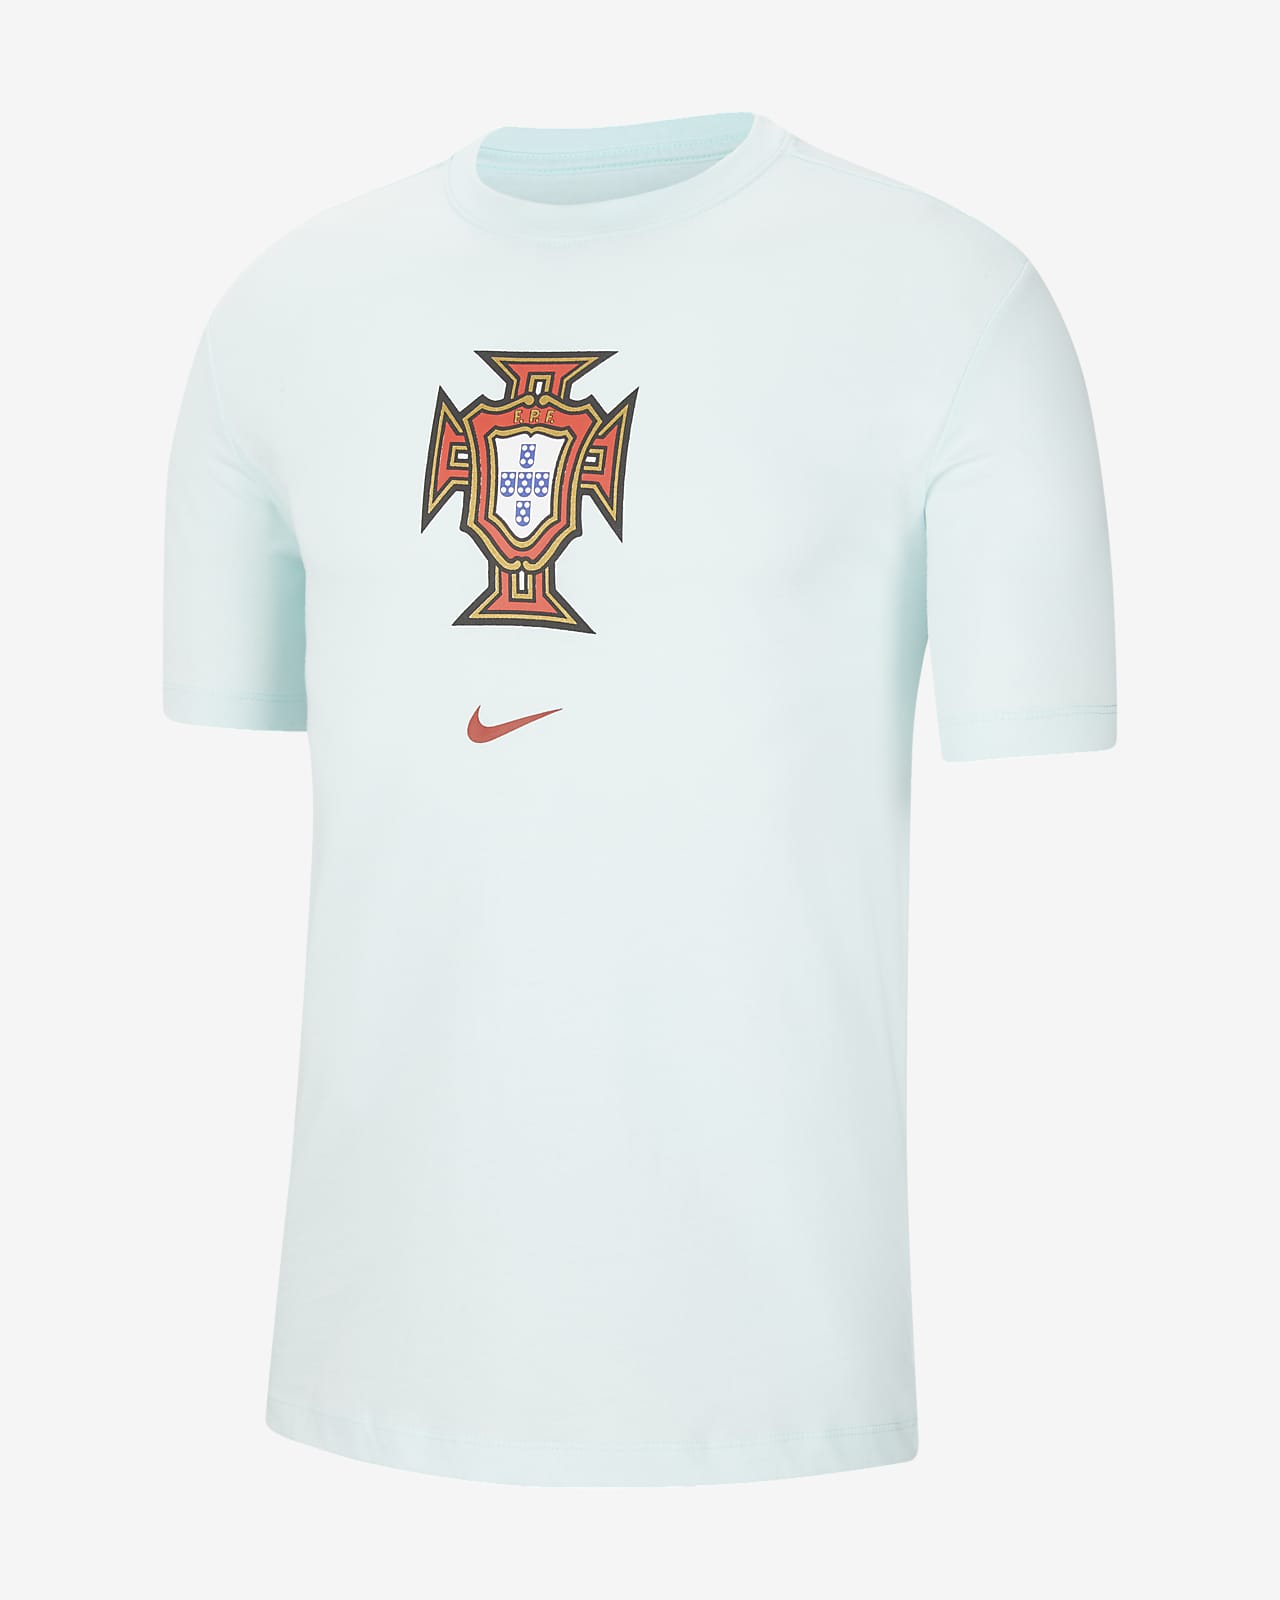 Portugal Men's Soccer T Shirt